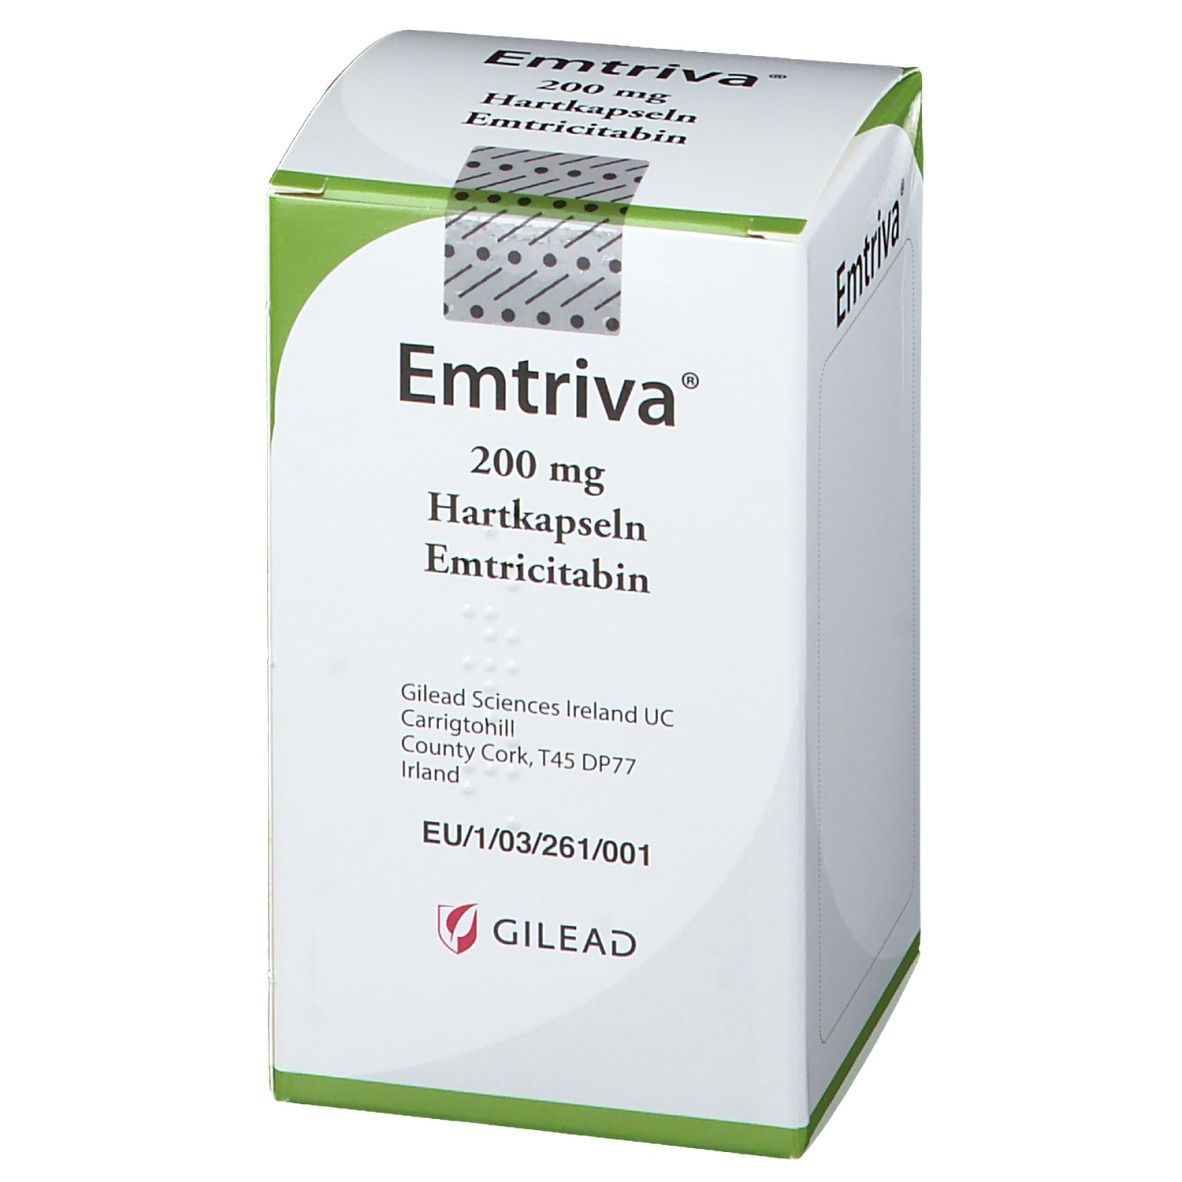 Emtriva® 200 mg